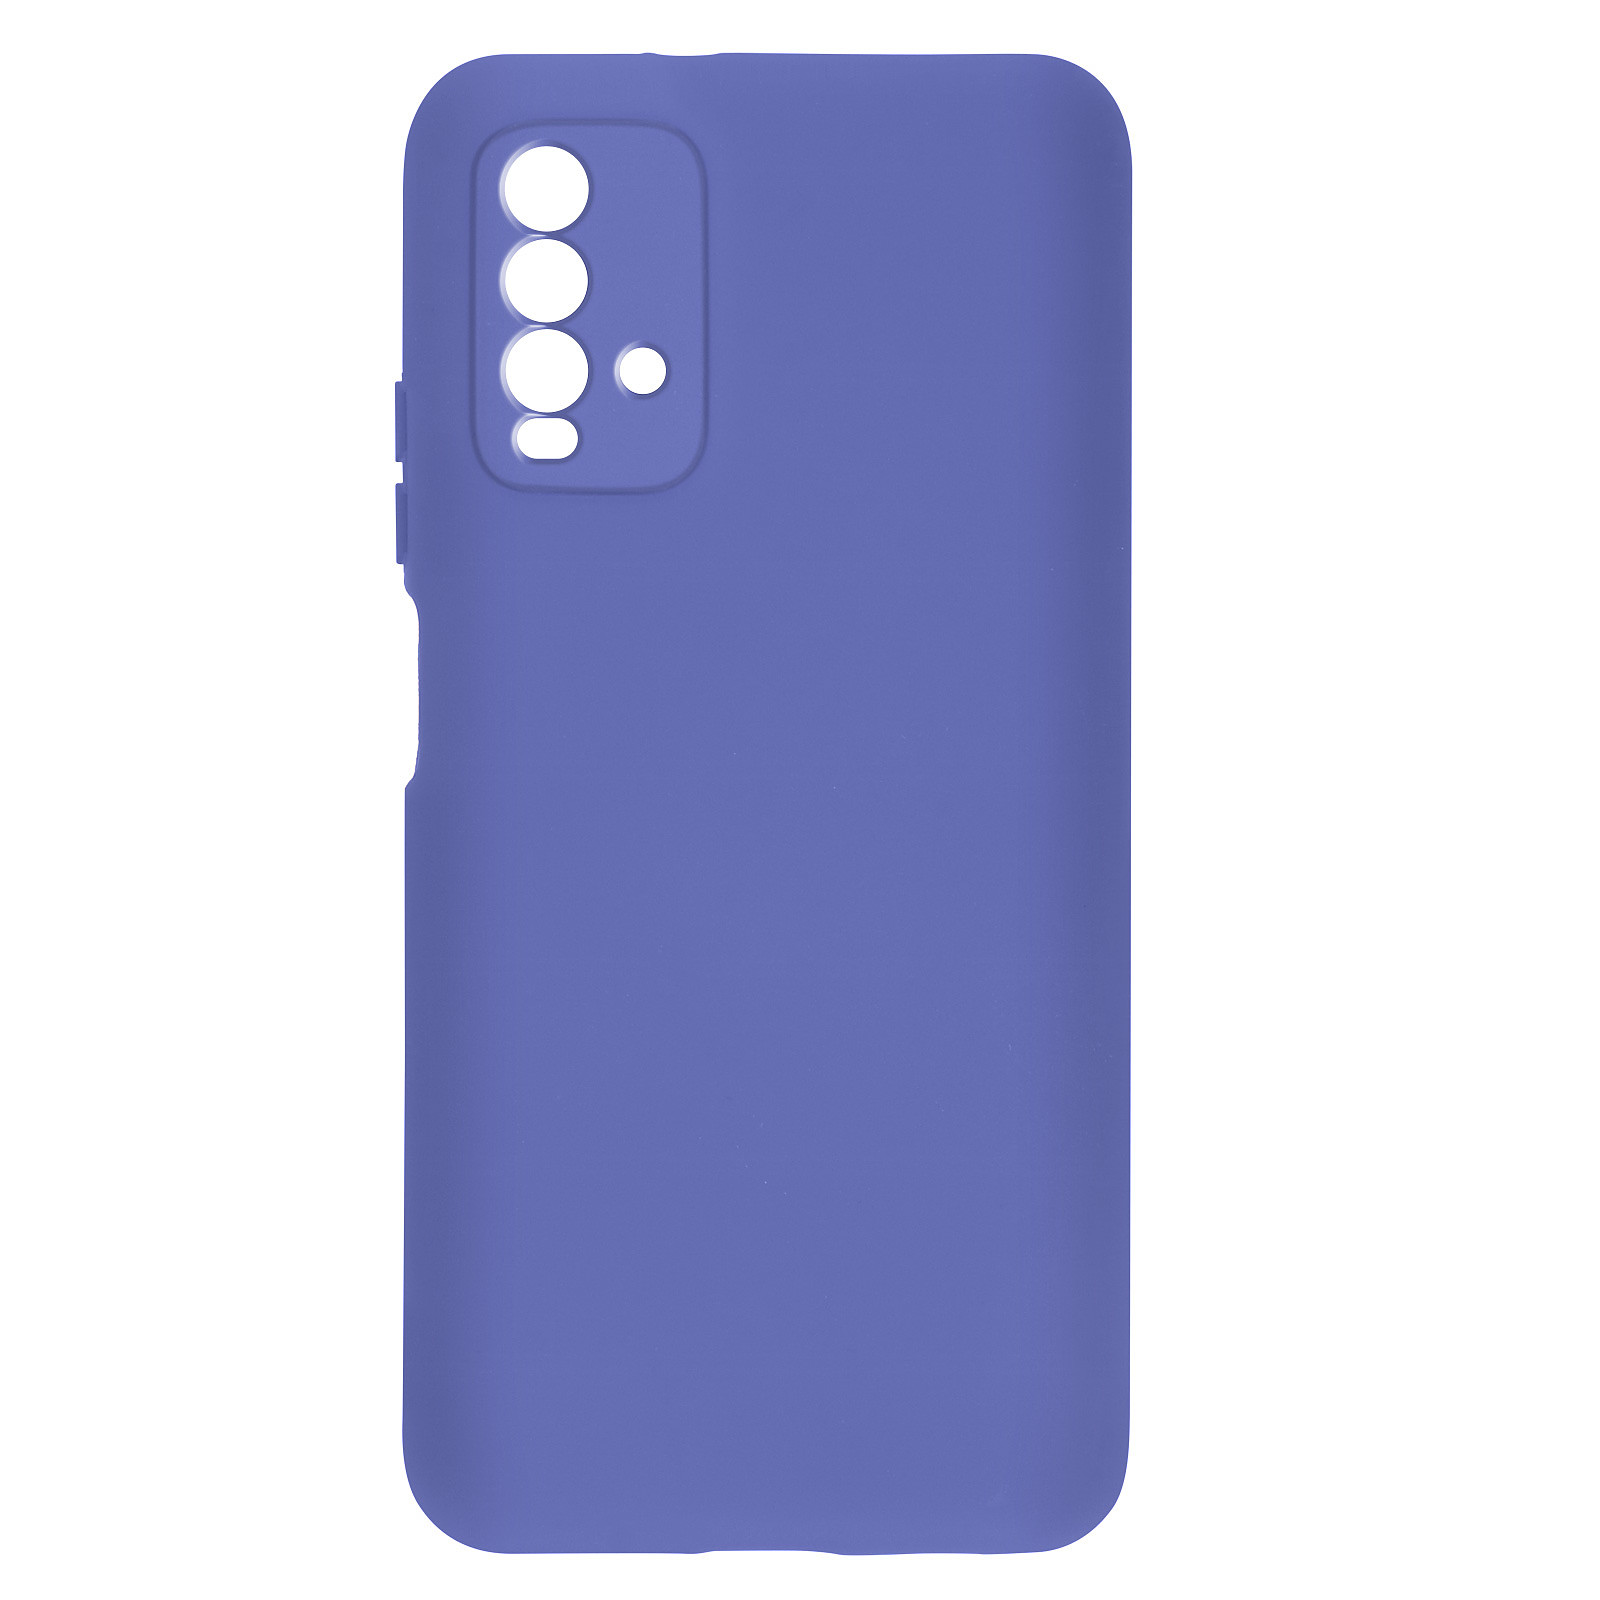 Avizar Coque pour Xiaomi Redmi 9T Silicone Semi-rigide Finition Soft Touch Fine violet - Coque telephone Avizar